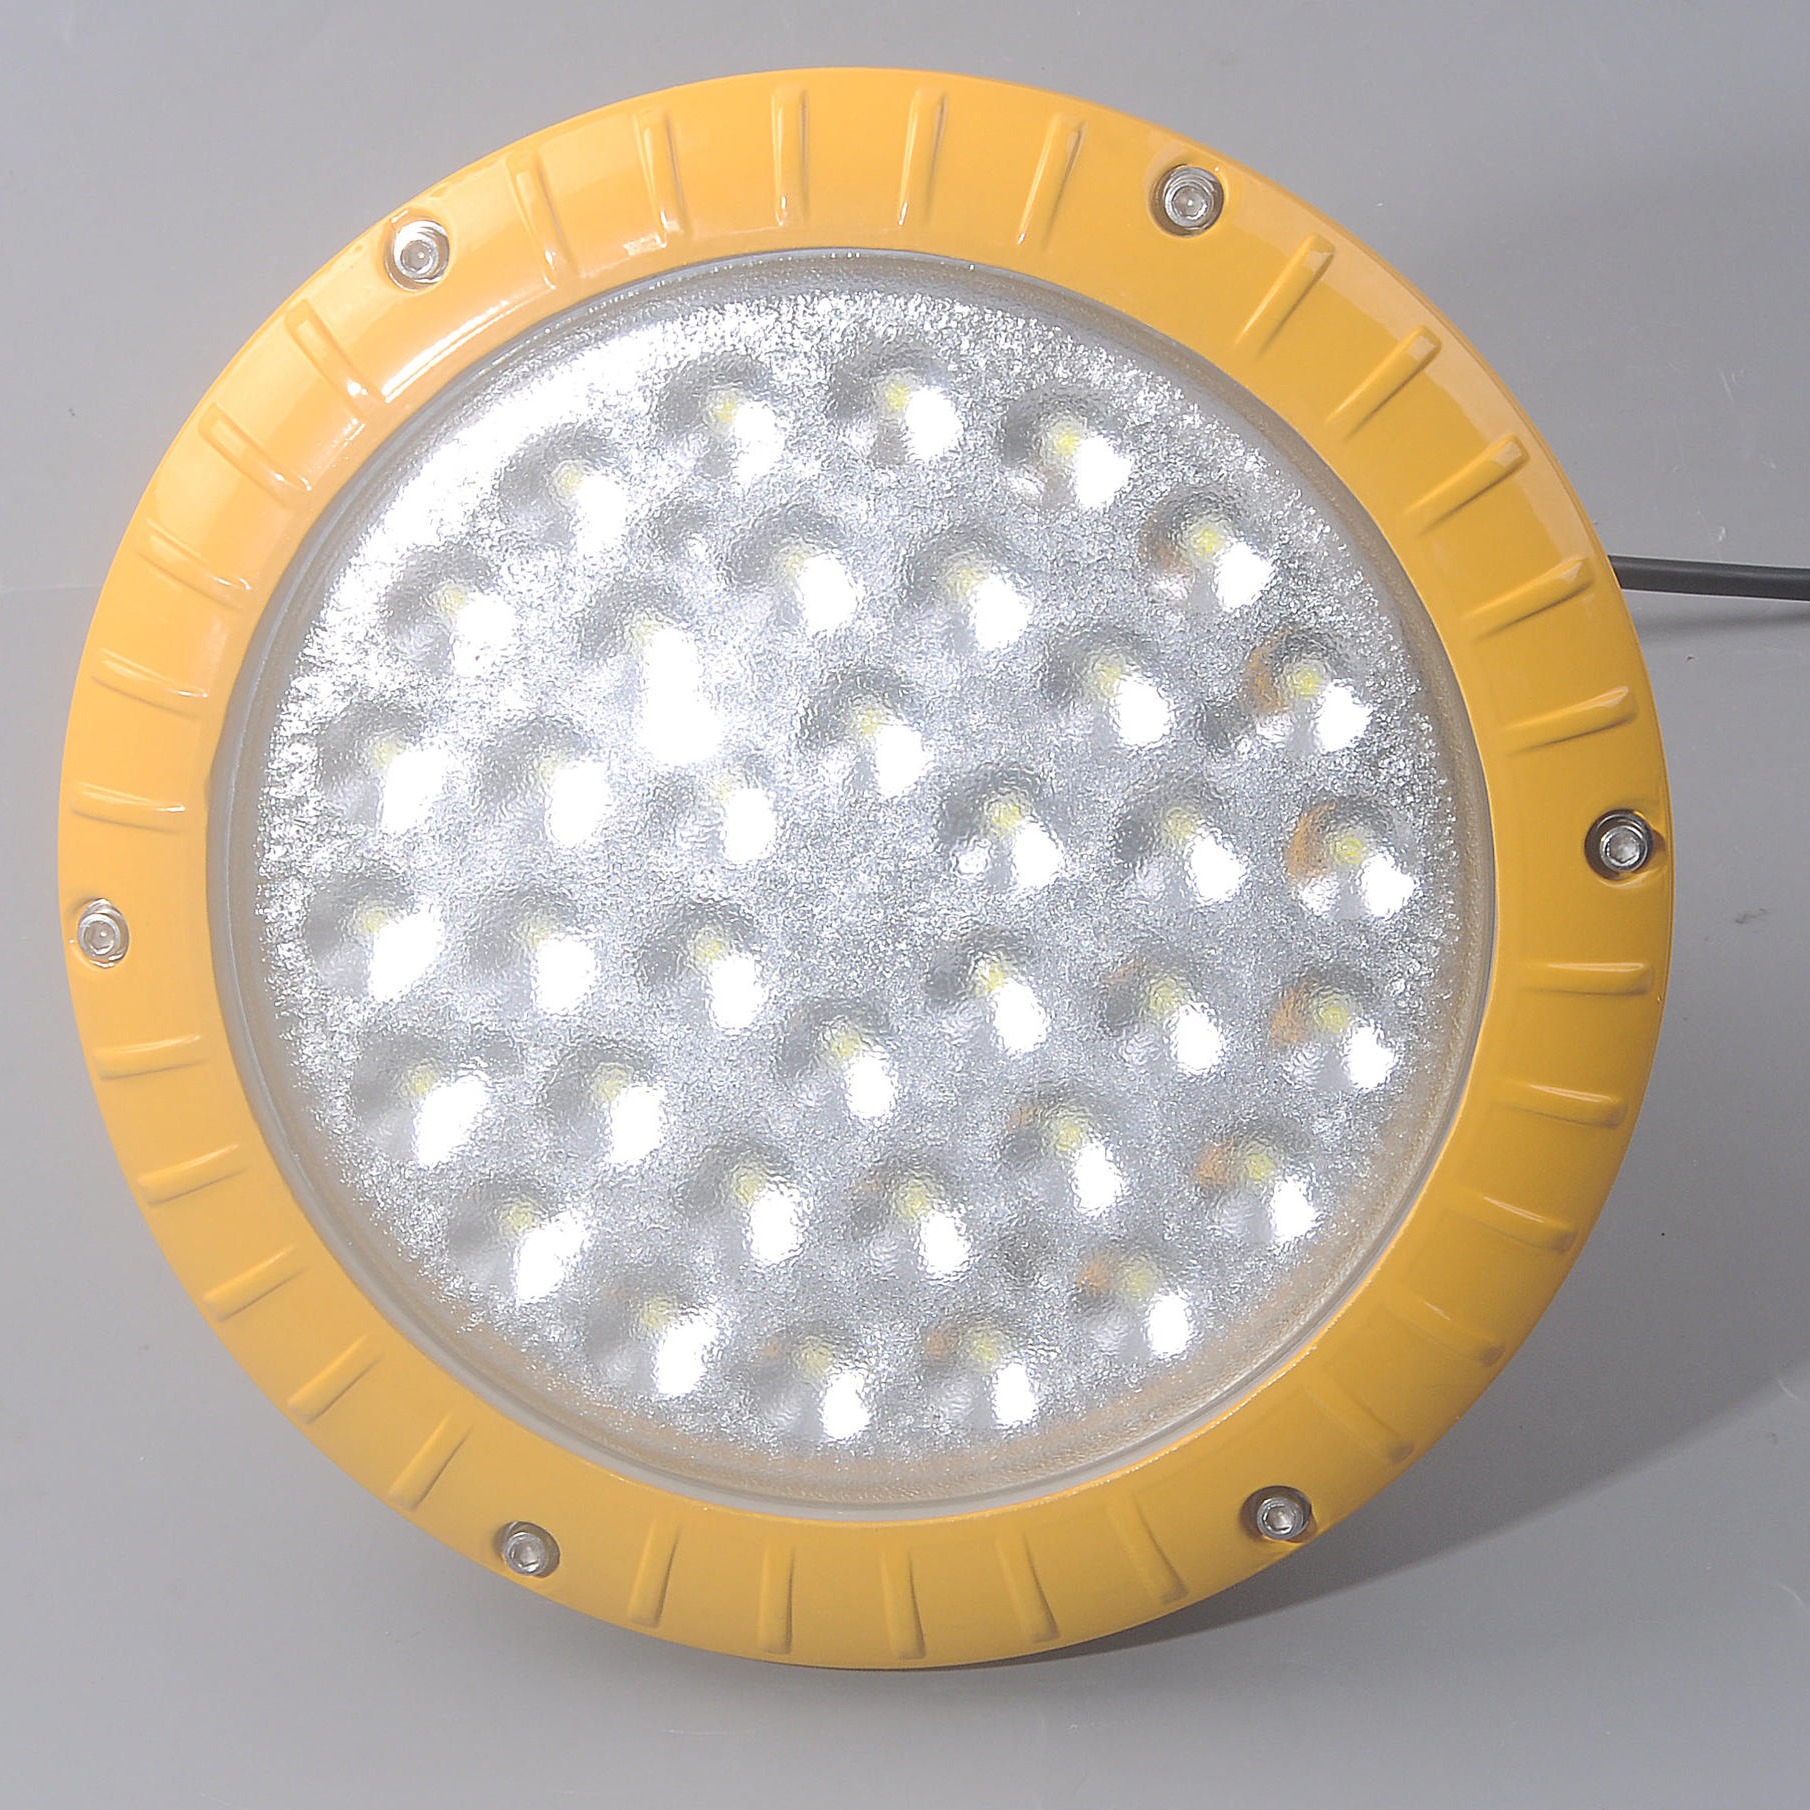 洲创电气BLED61防爆LED照明灯 免维护喷砂房防爆灯  LED防爆应急照明灯